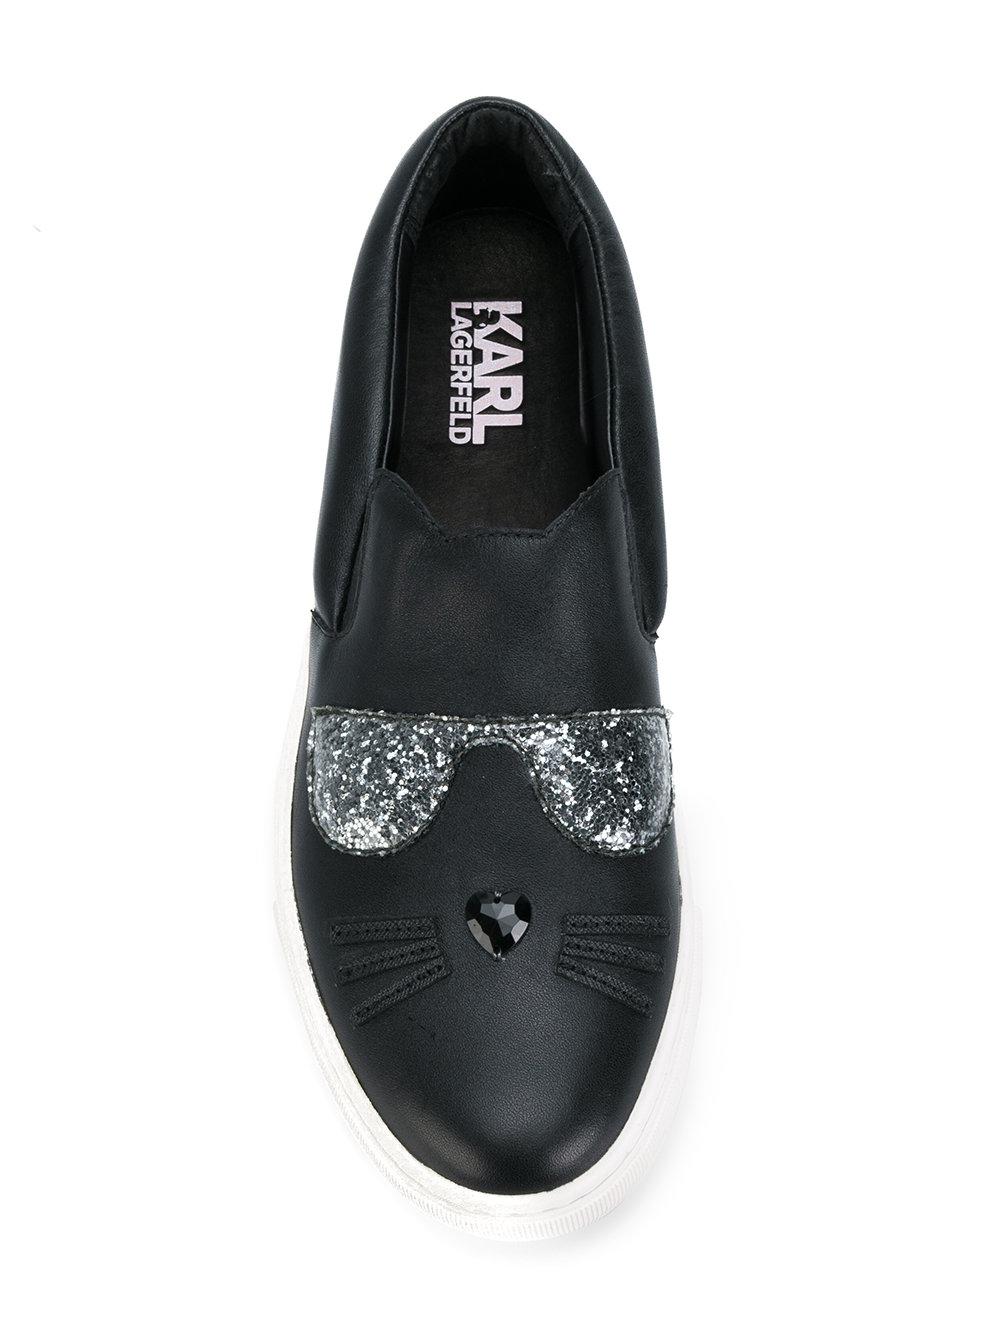 Karl Lagerfeld Kupsole Choupette Sneakers in Black - Lyst